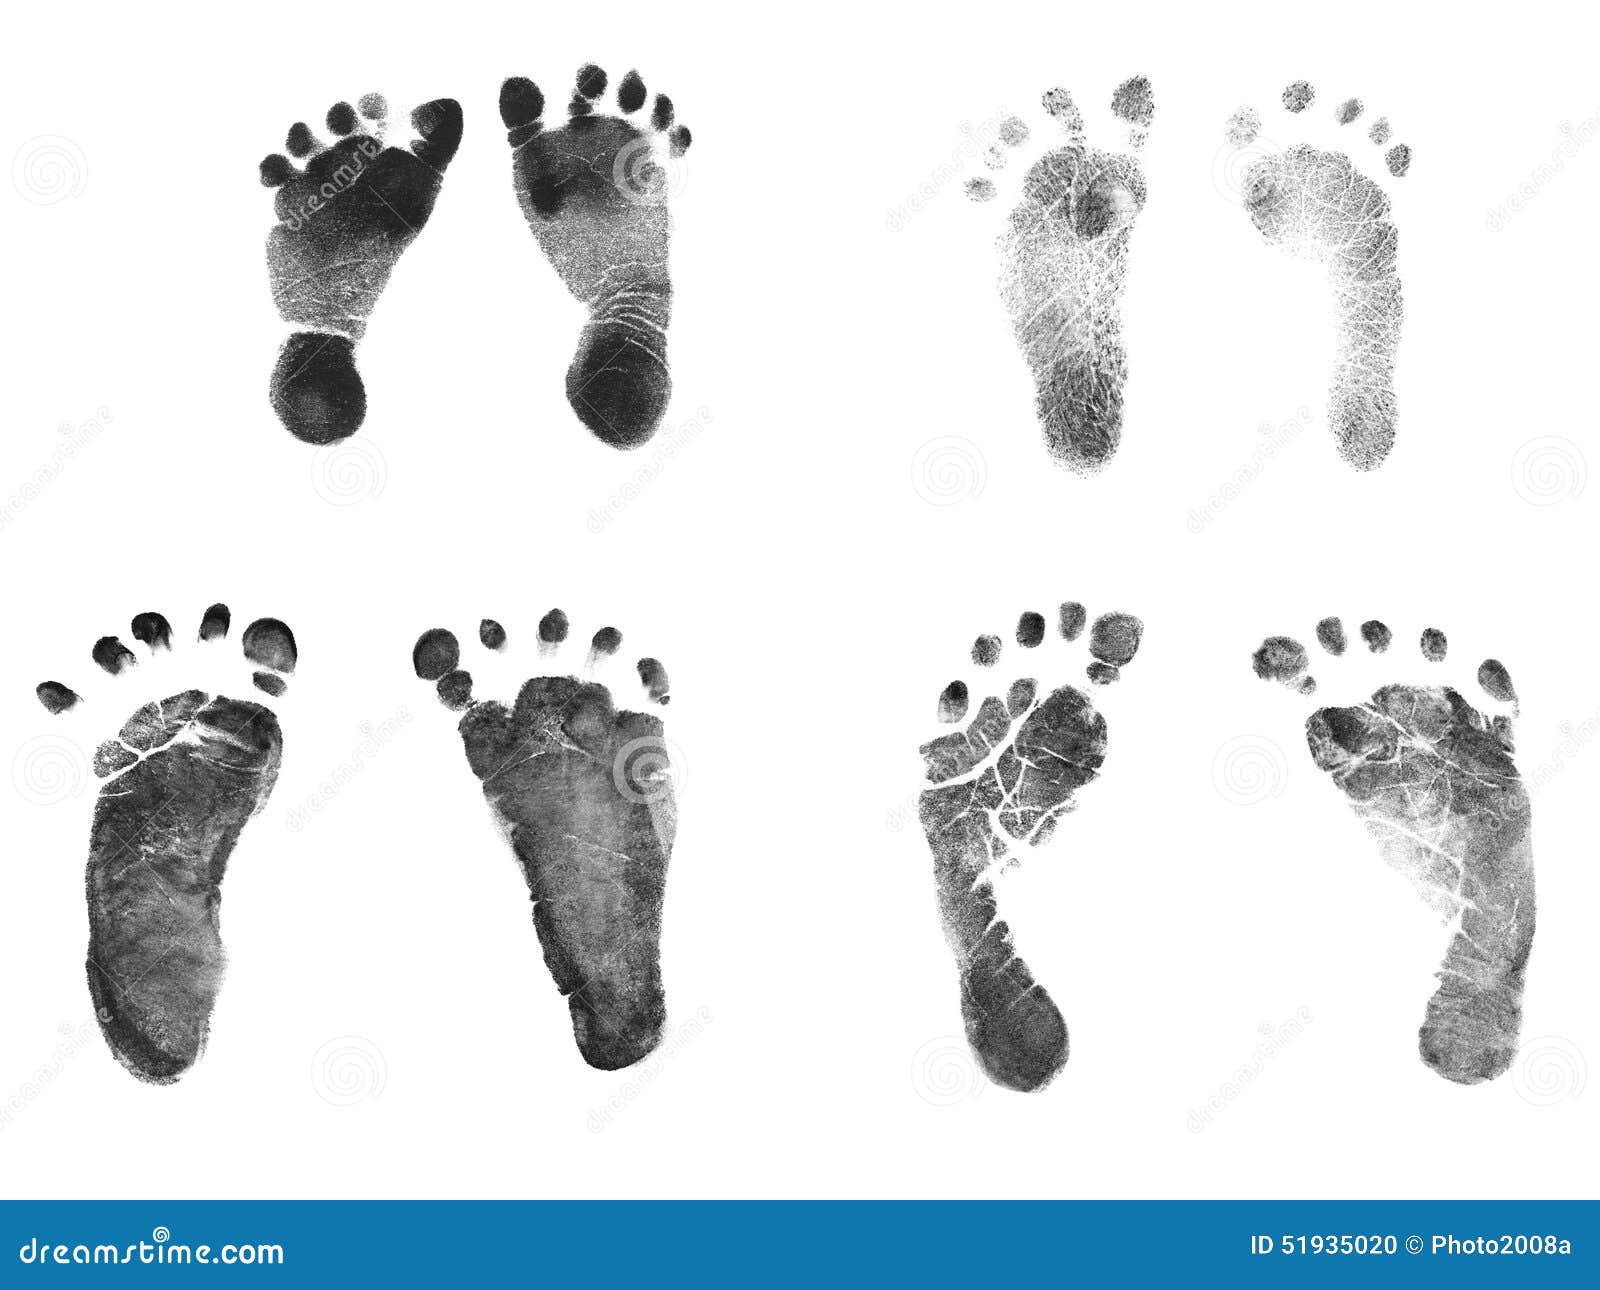 Huellas de bebé recién nacido de tinta negra: fotografía de stock ©  Christin_Lola #40474665